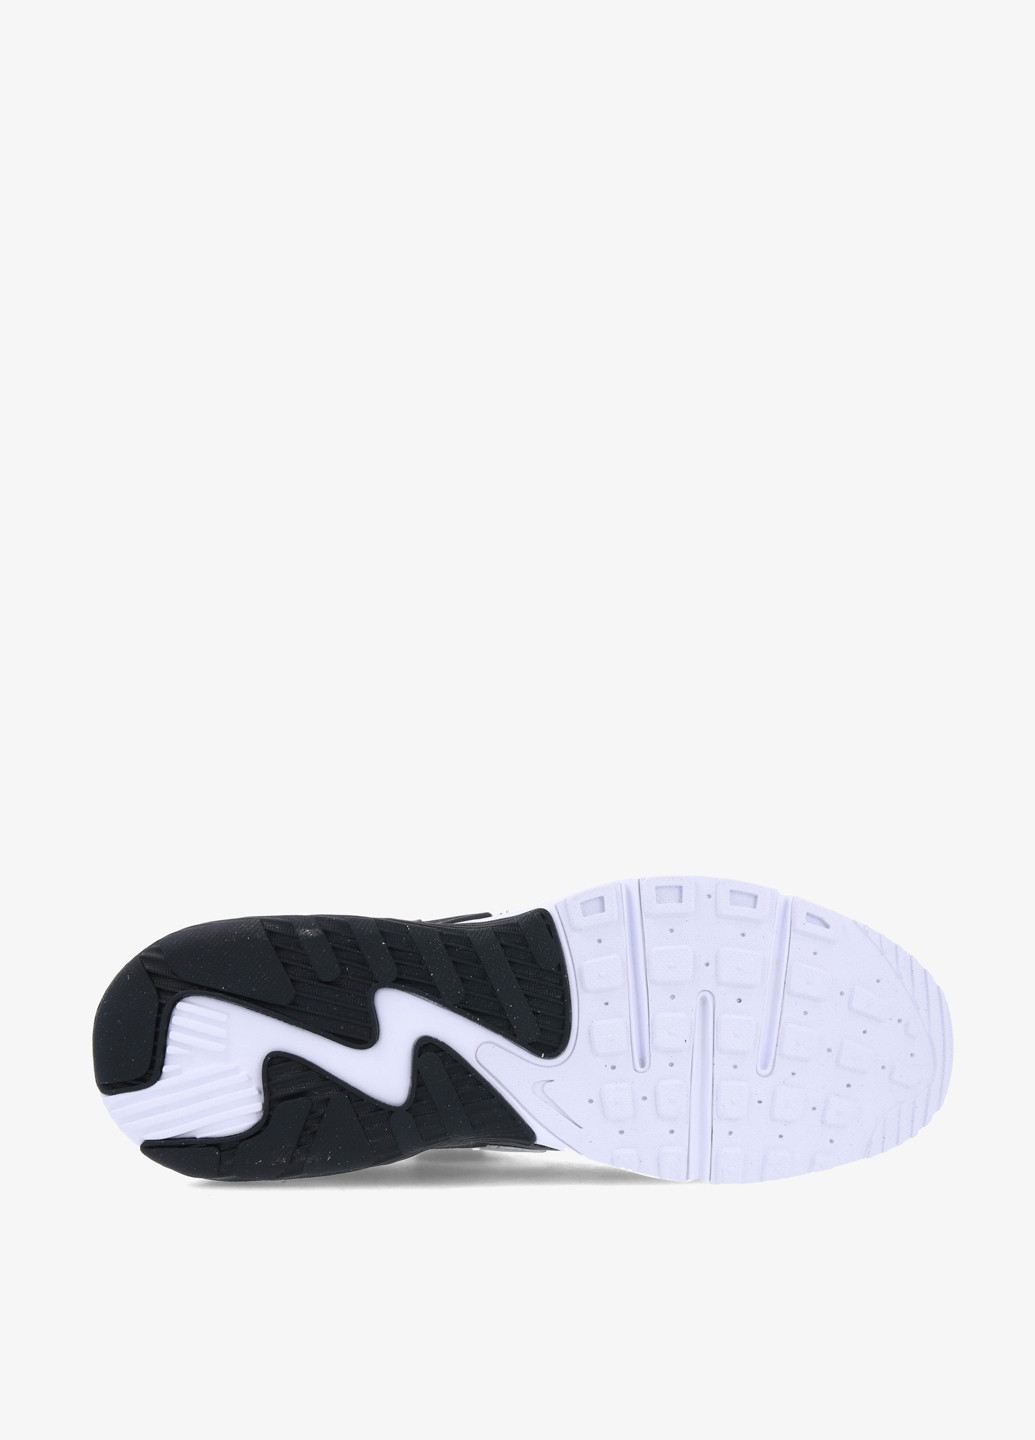 Черно-белые всесезонные кроссовки Nike AIR MAX EXCEE